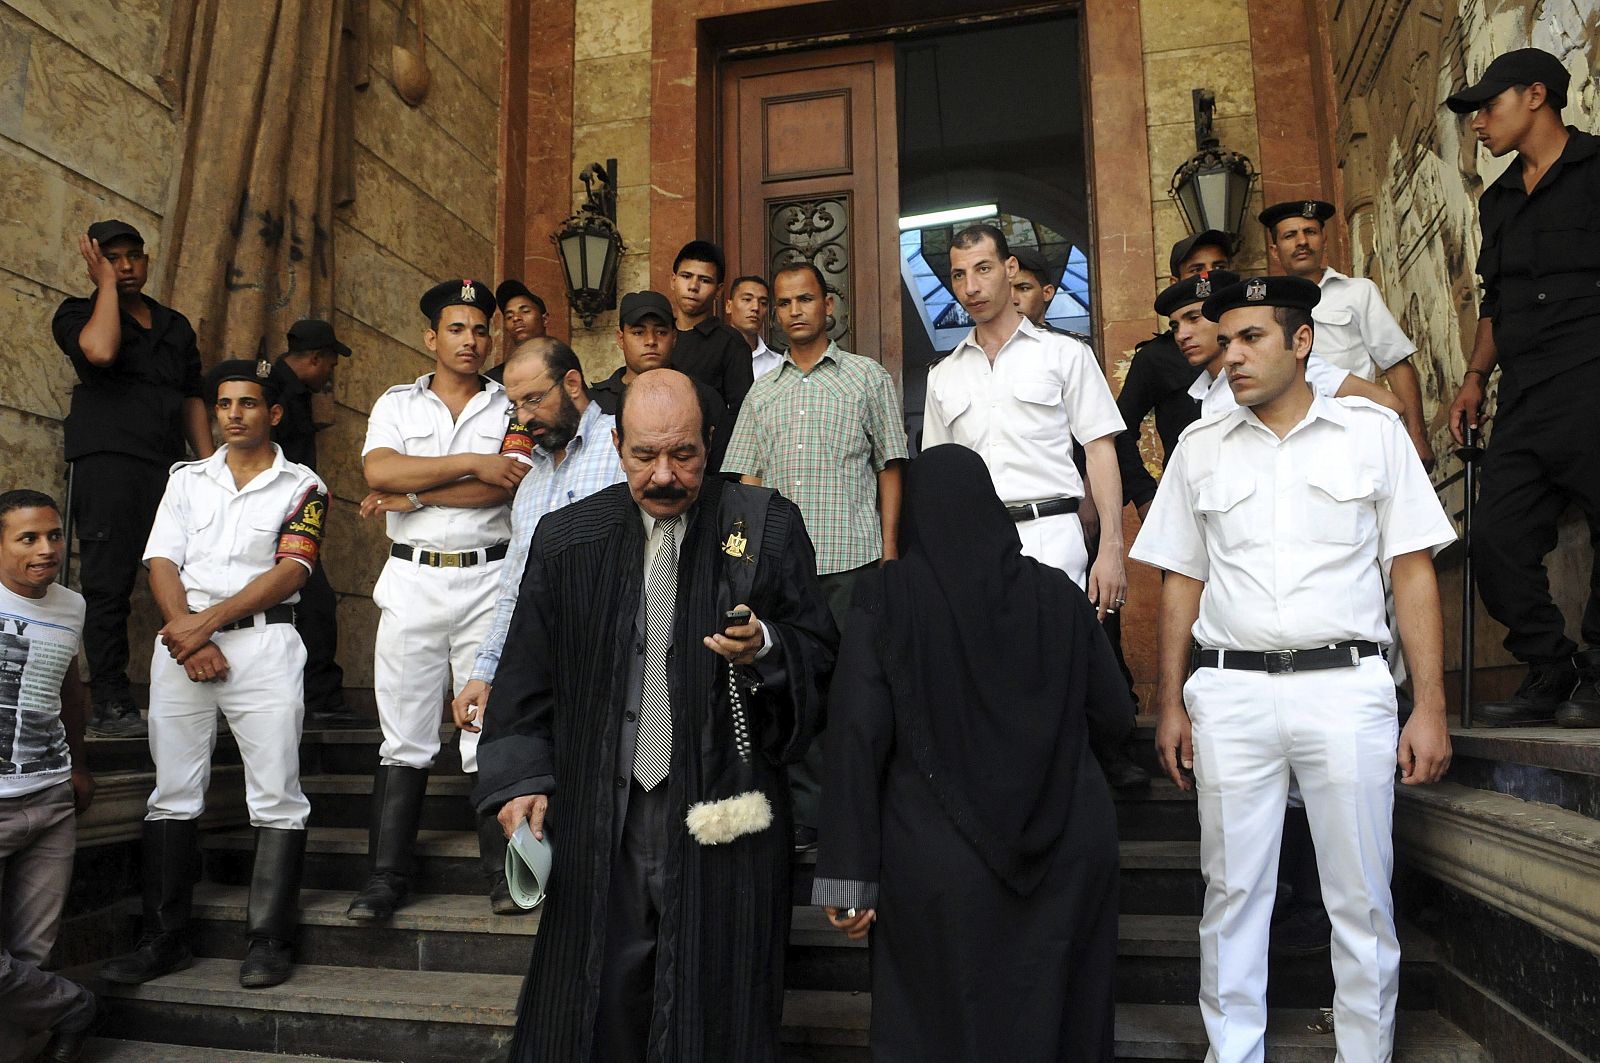 Un abogado (c) sale del tirbunal mientras unos soldados hacen guardia en El Cairo